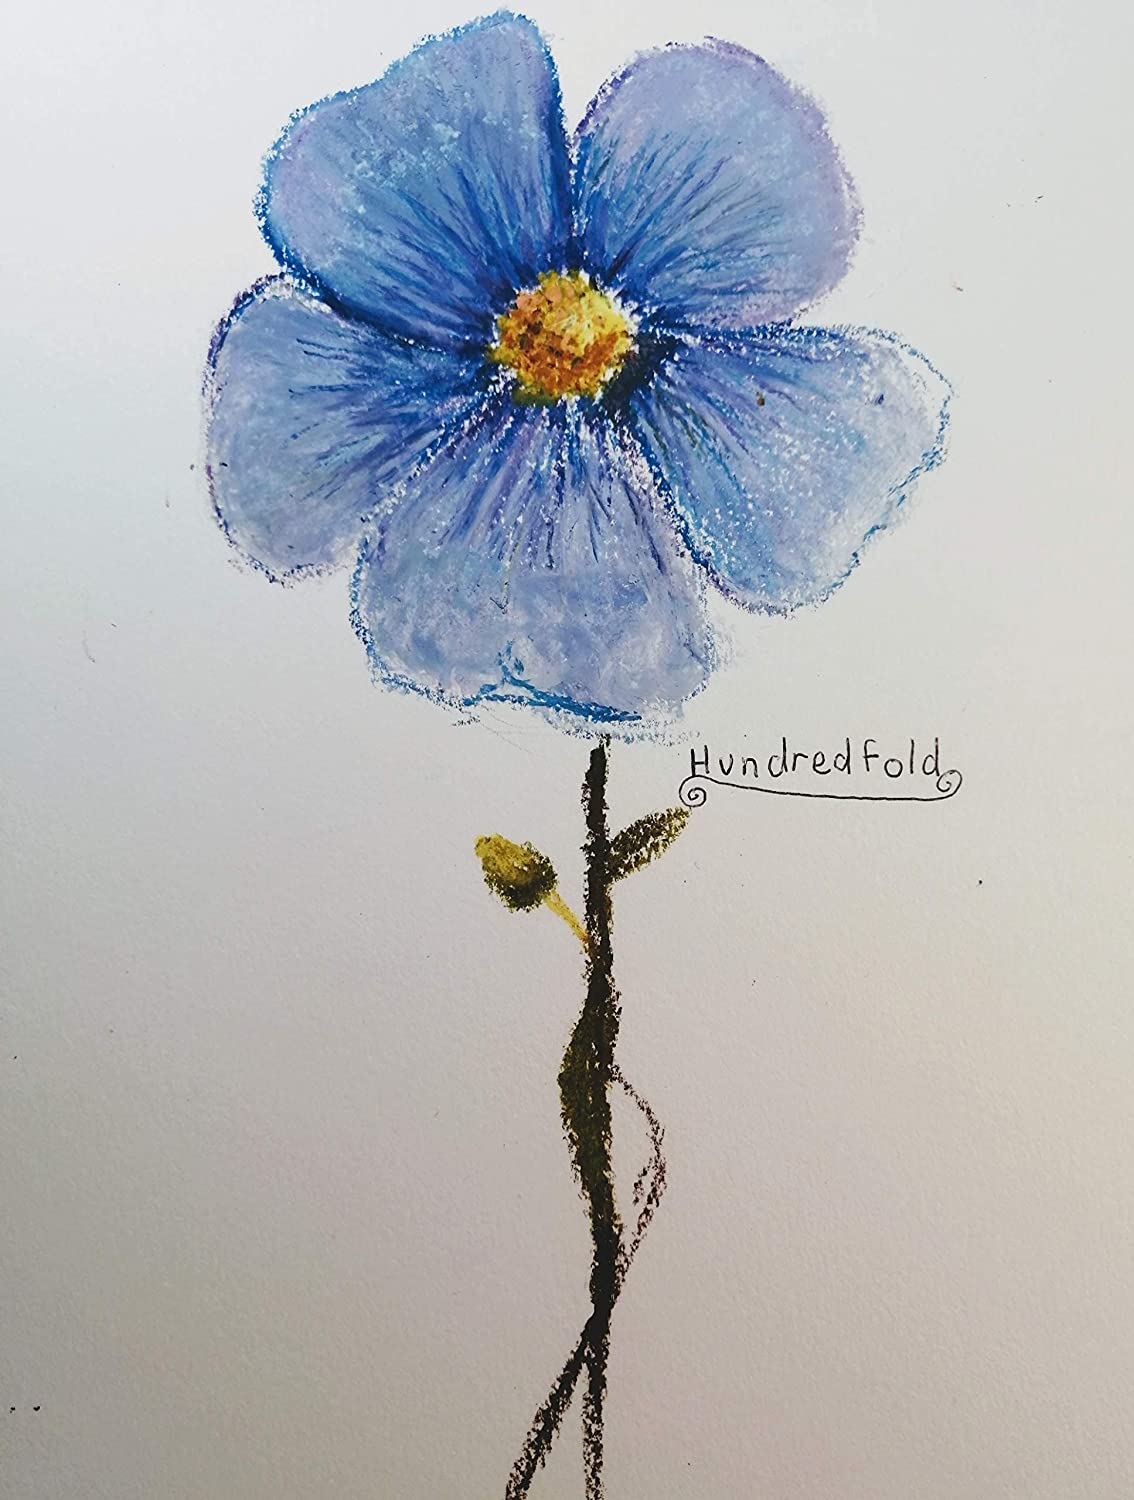 Hundredfold Blue Flax 500 Flower Seeds - Linum perenne Non-GMO, Prairie Flax, Perennial Flax